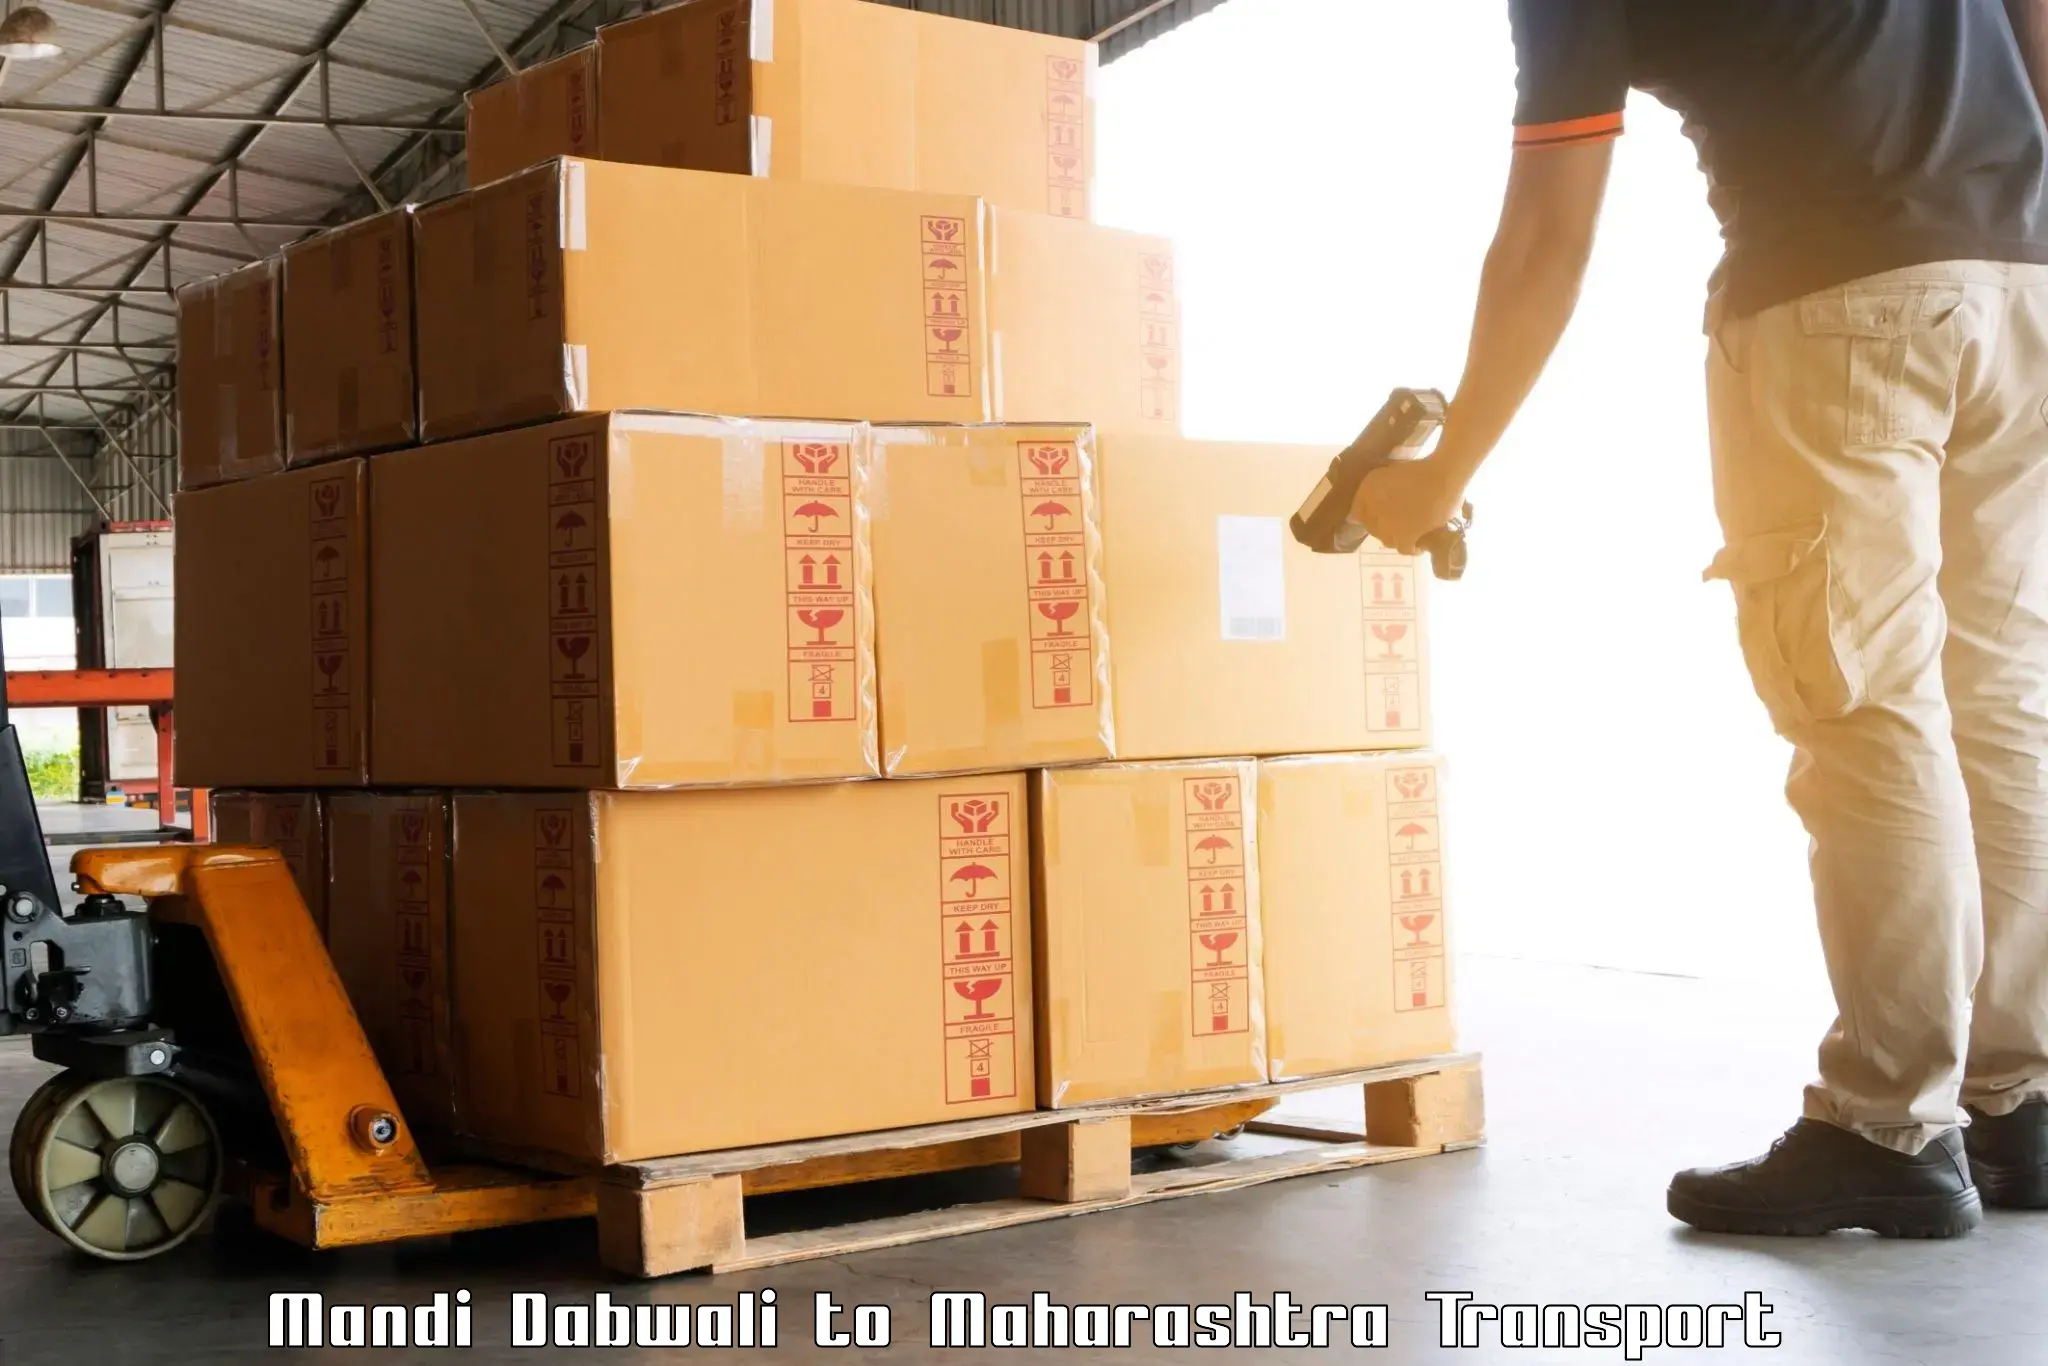 Goods delivery service Mandi Dabwali to Bhiwandi